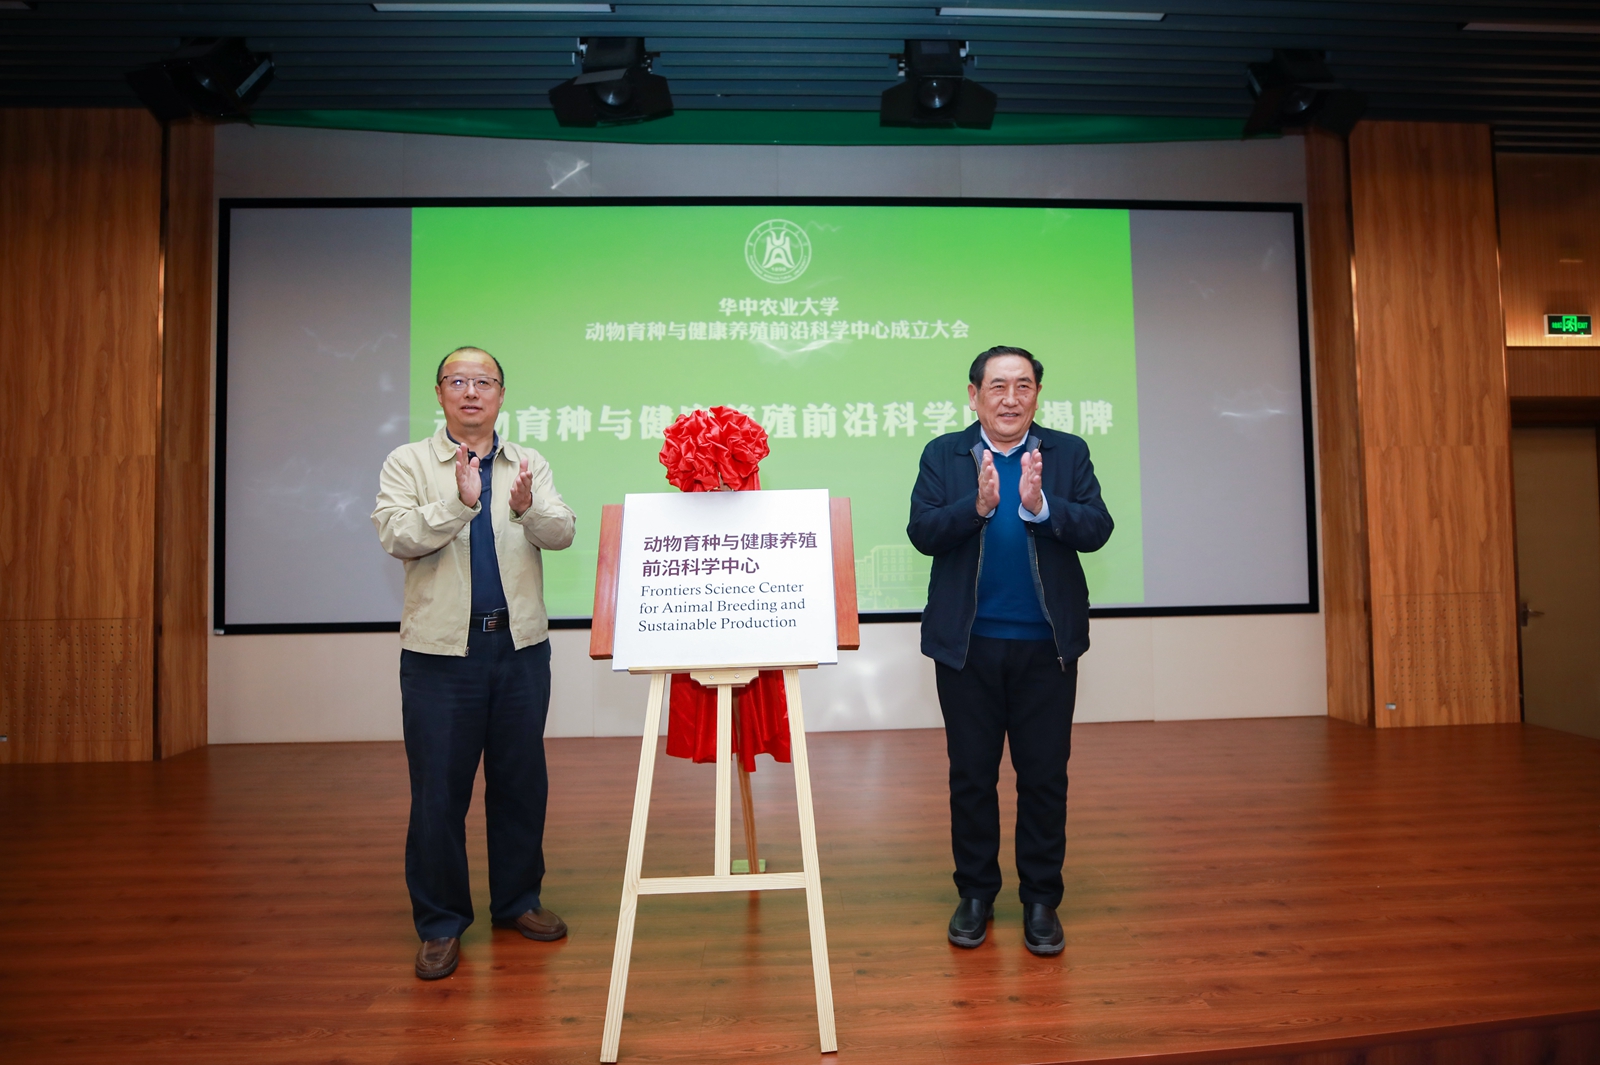 2021年10月25日李召虎校长、陈焕春院士为新成立的华中农业大学前沿科学中心揭牌